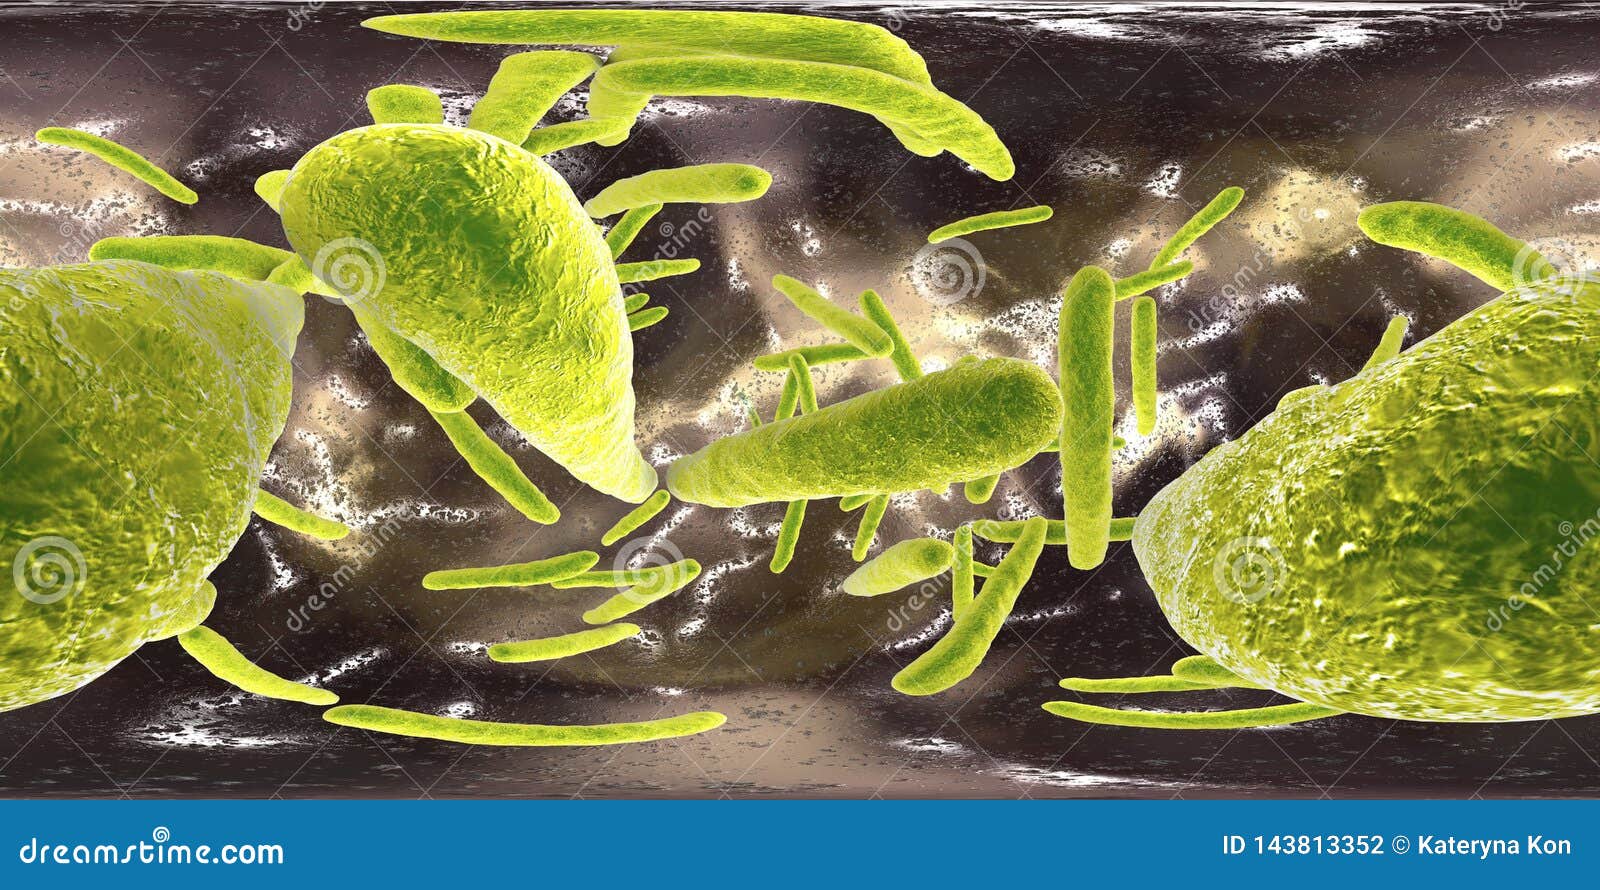 360-degree spherical panorama of bacteria mycobacterium tuberculosis